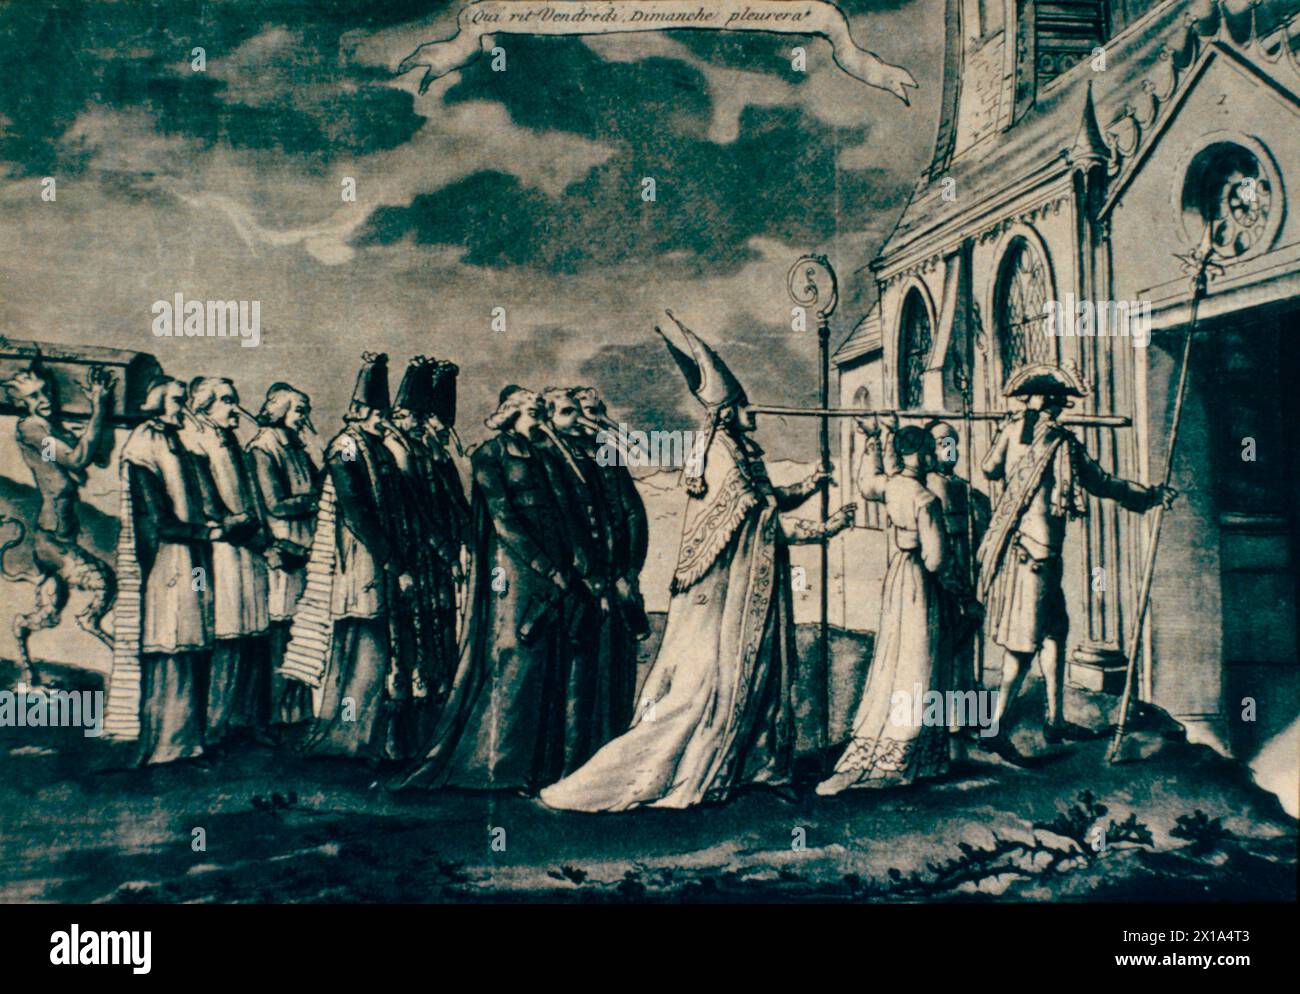 La Constitution civile du clergé, caricature anticléricale, France 1790 Banque D'Images